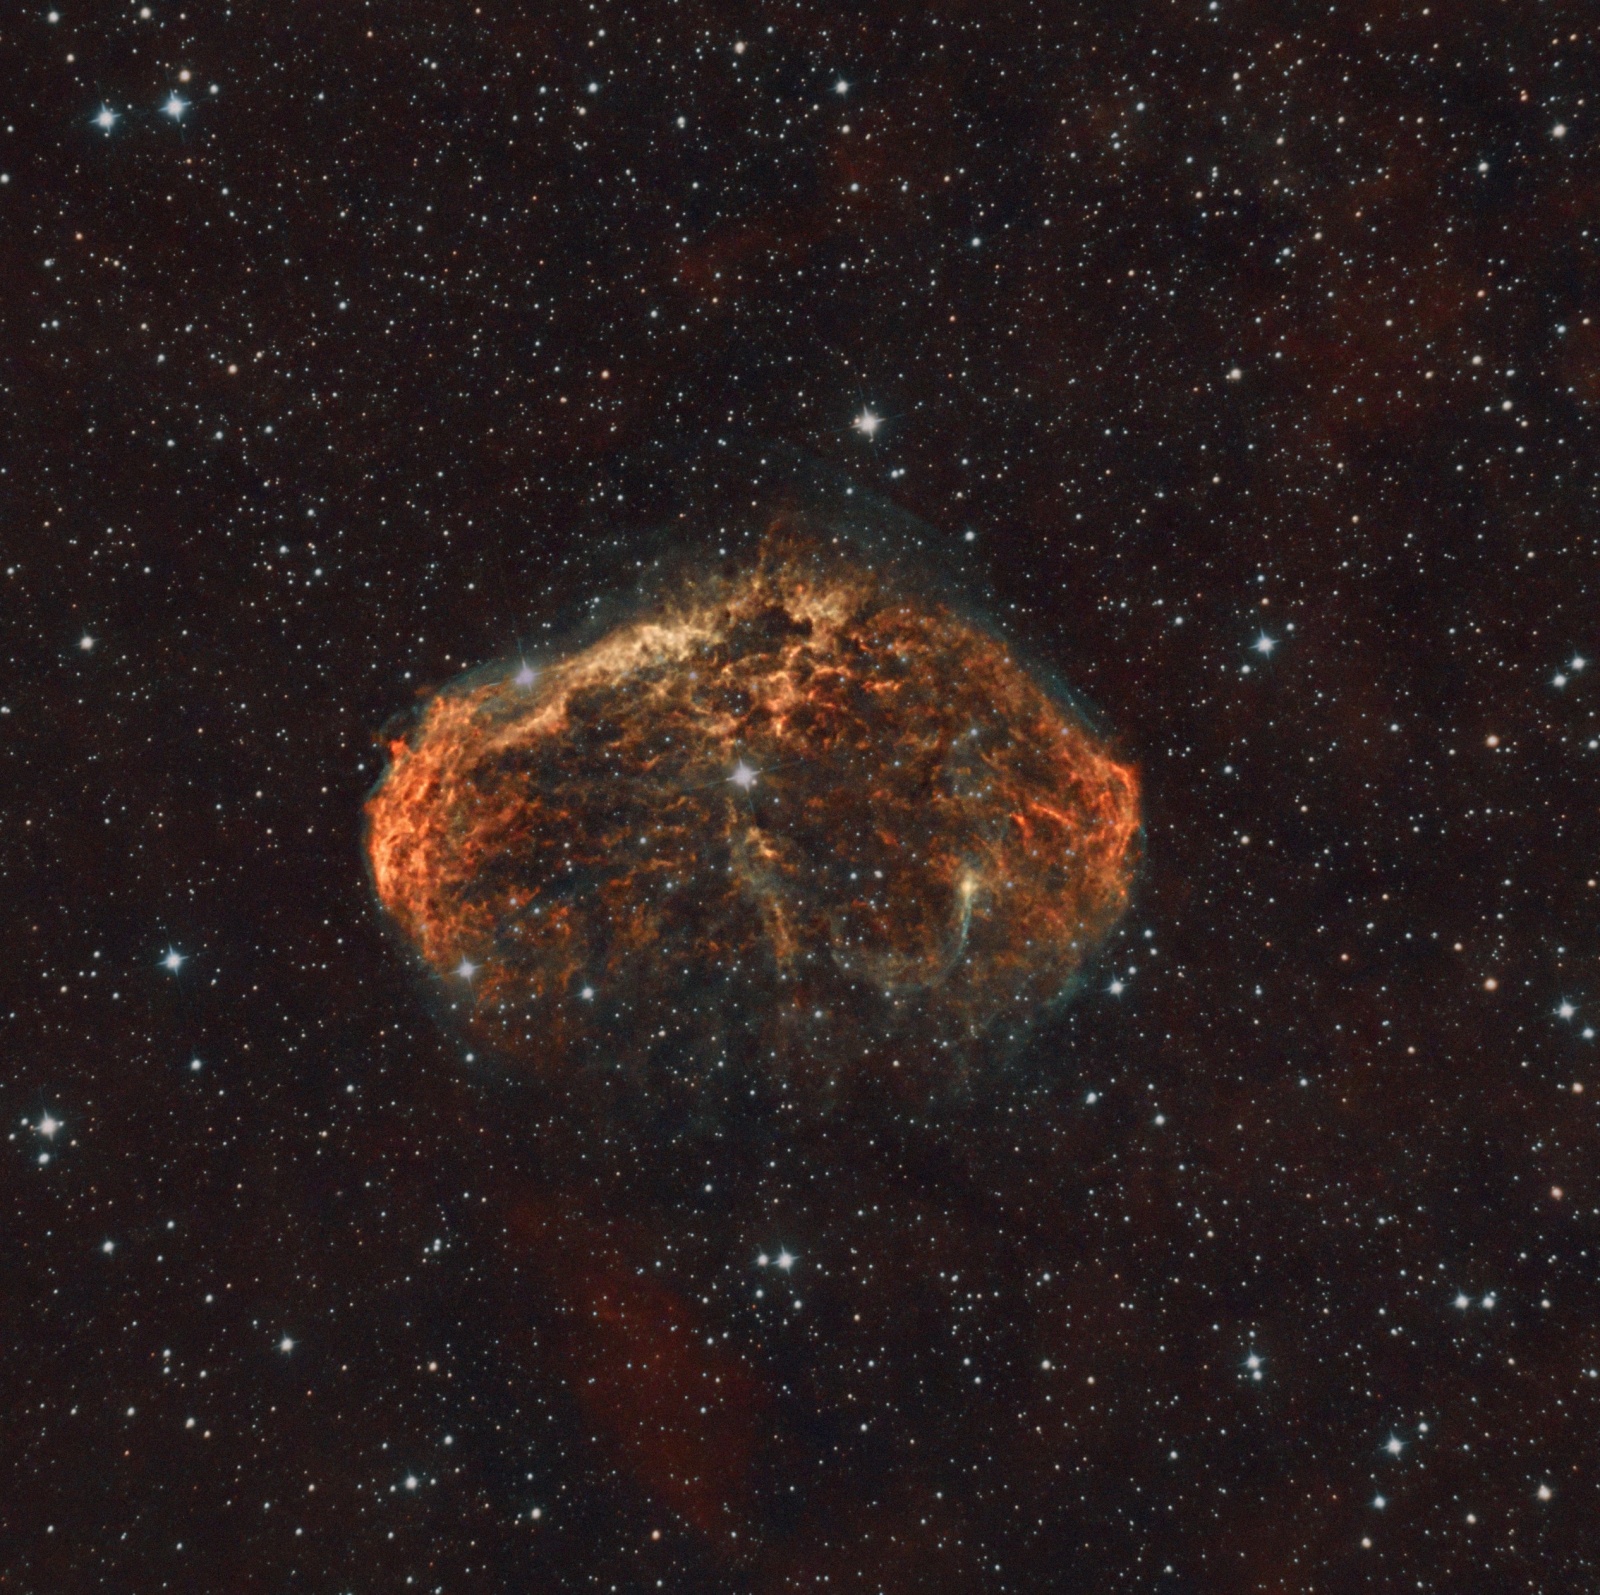 NGC_6888_2.thumb.jpg.c790d4f768fac59e9c6414b28a2a91cf.jpg